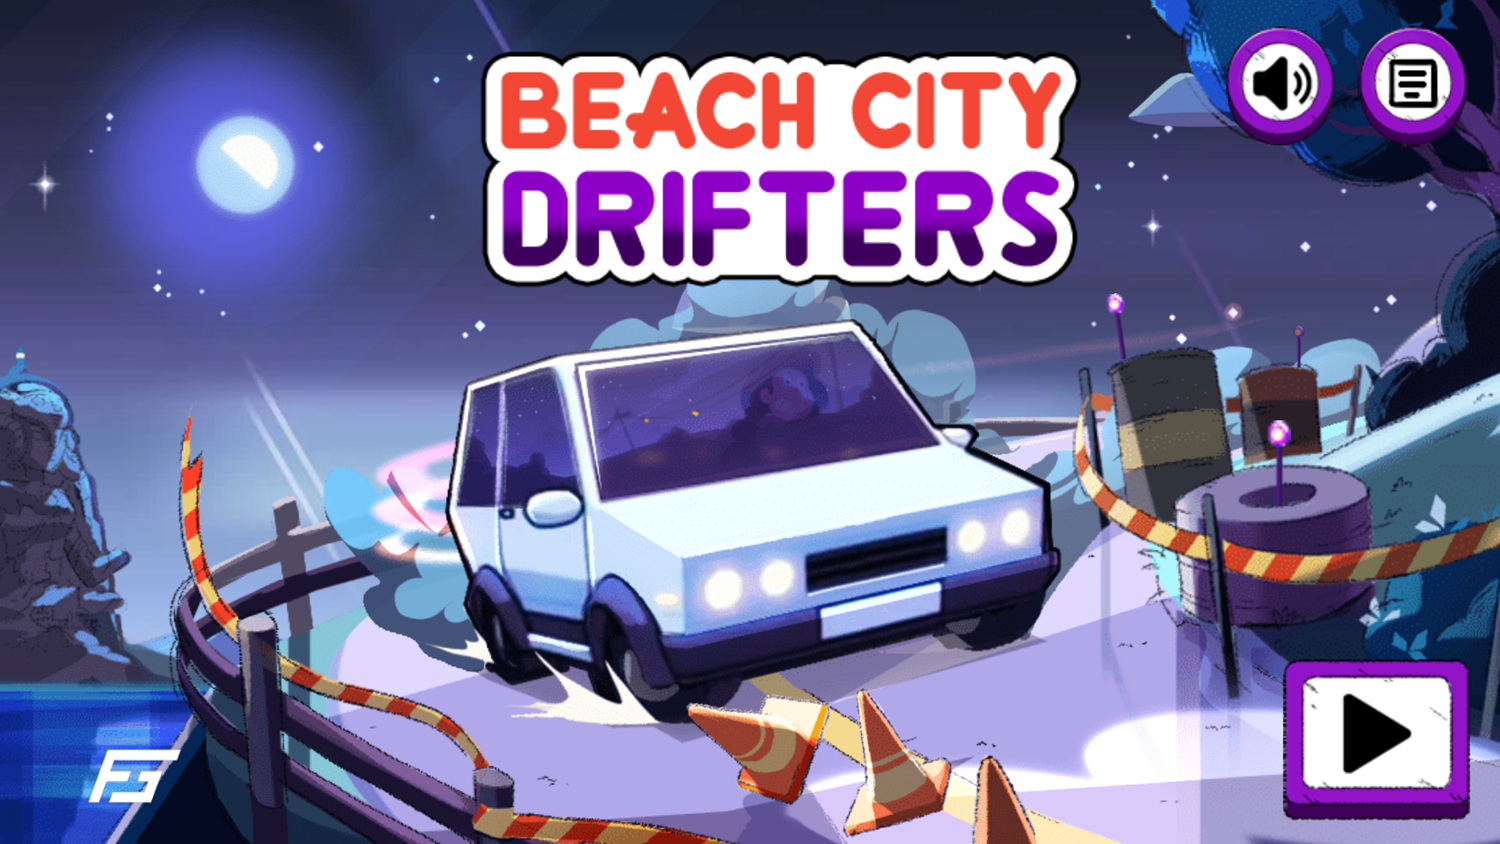 Steven Universe Beach City Drifters Game Welcome Screen Screenshot.